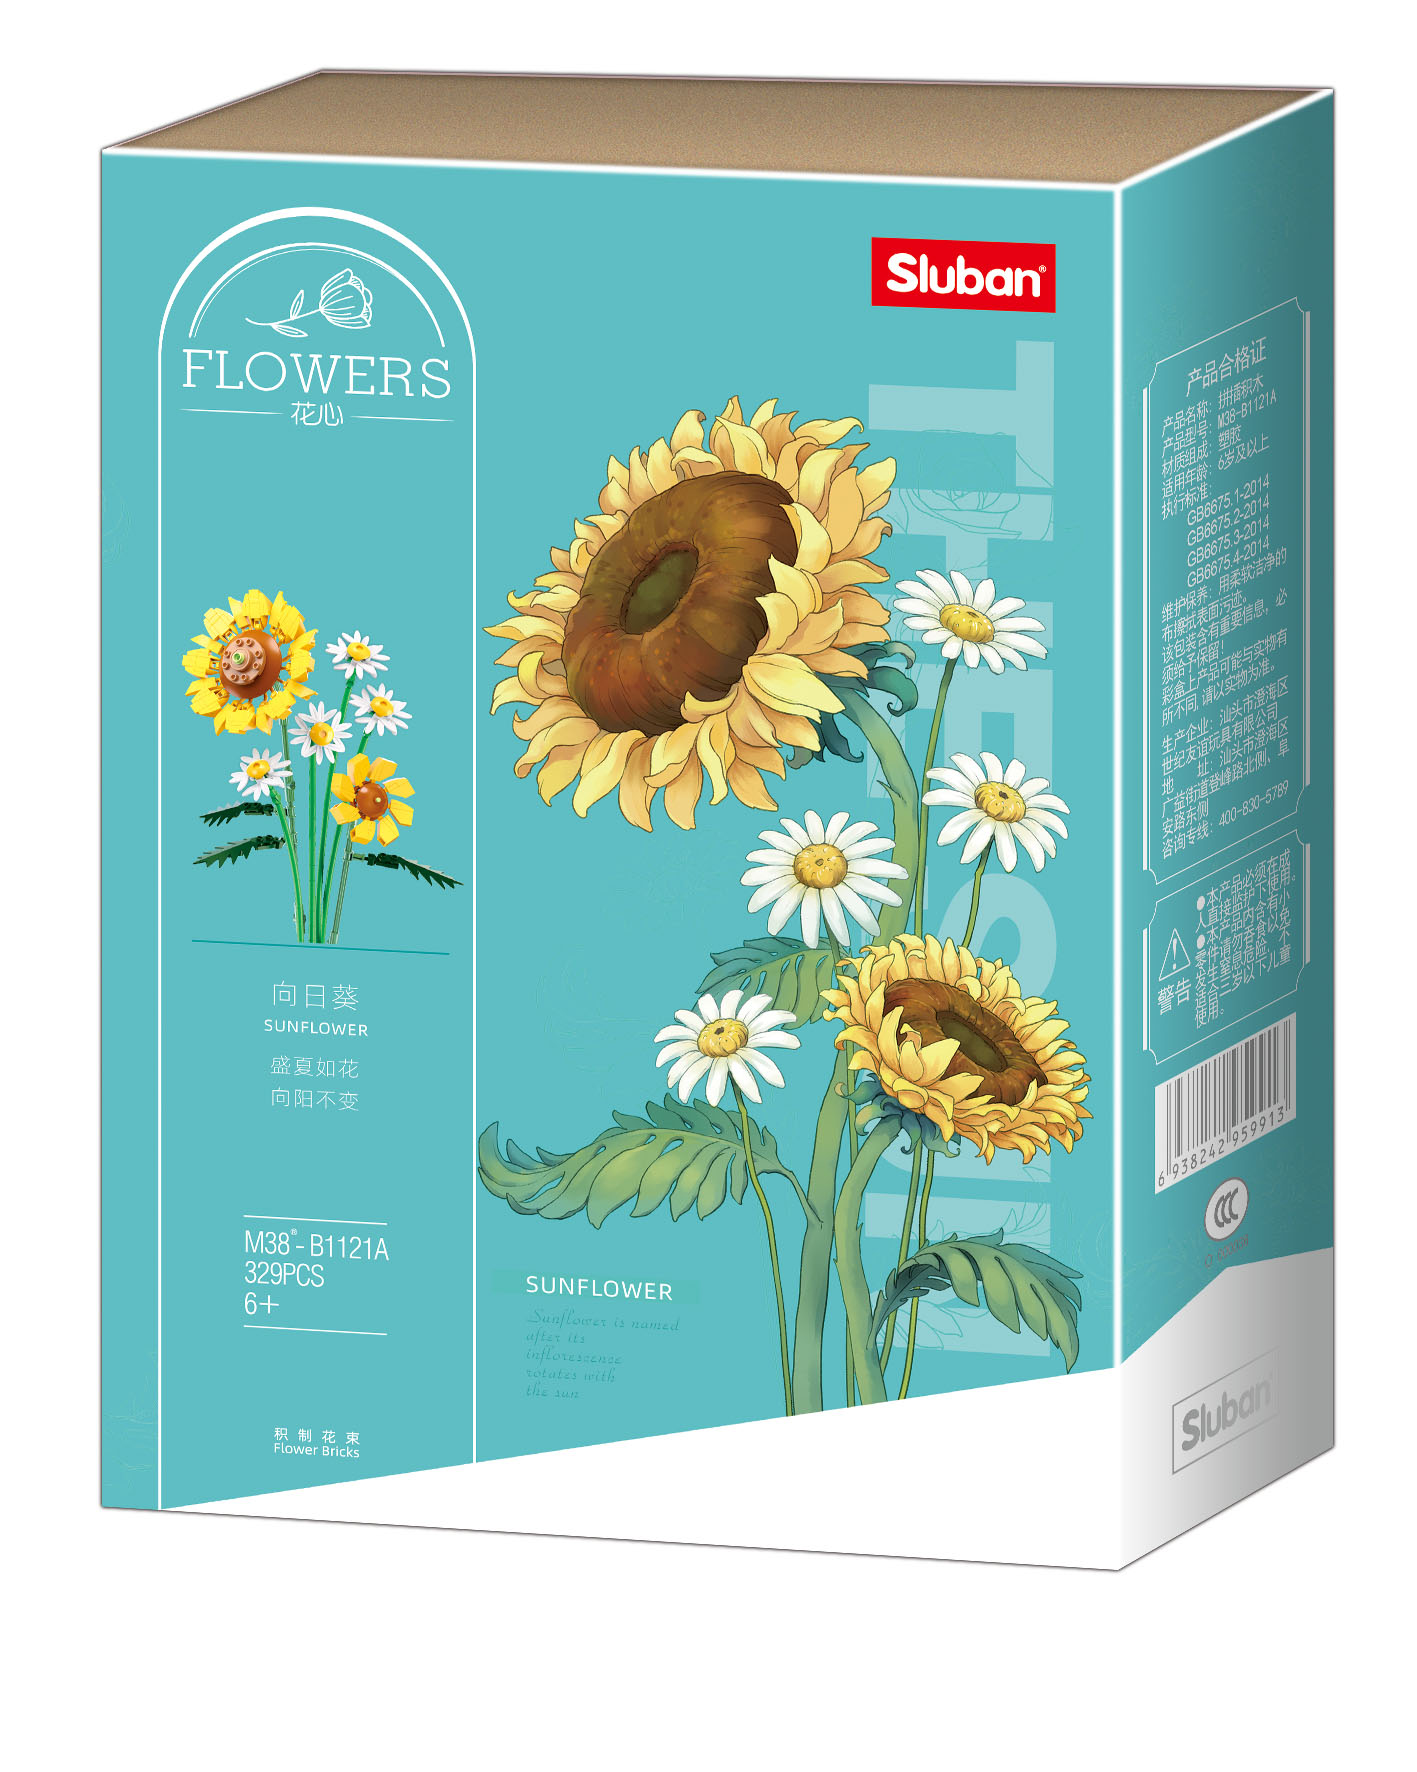 Sluban Flowers-Sunflower 329pcs 12+